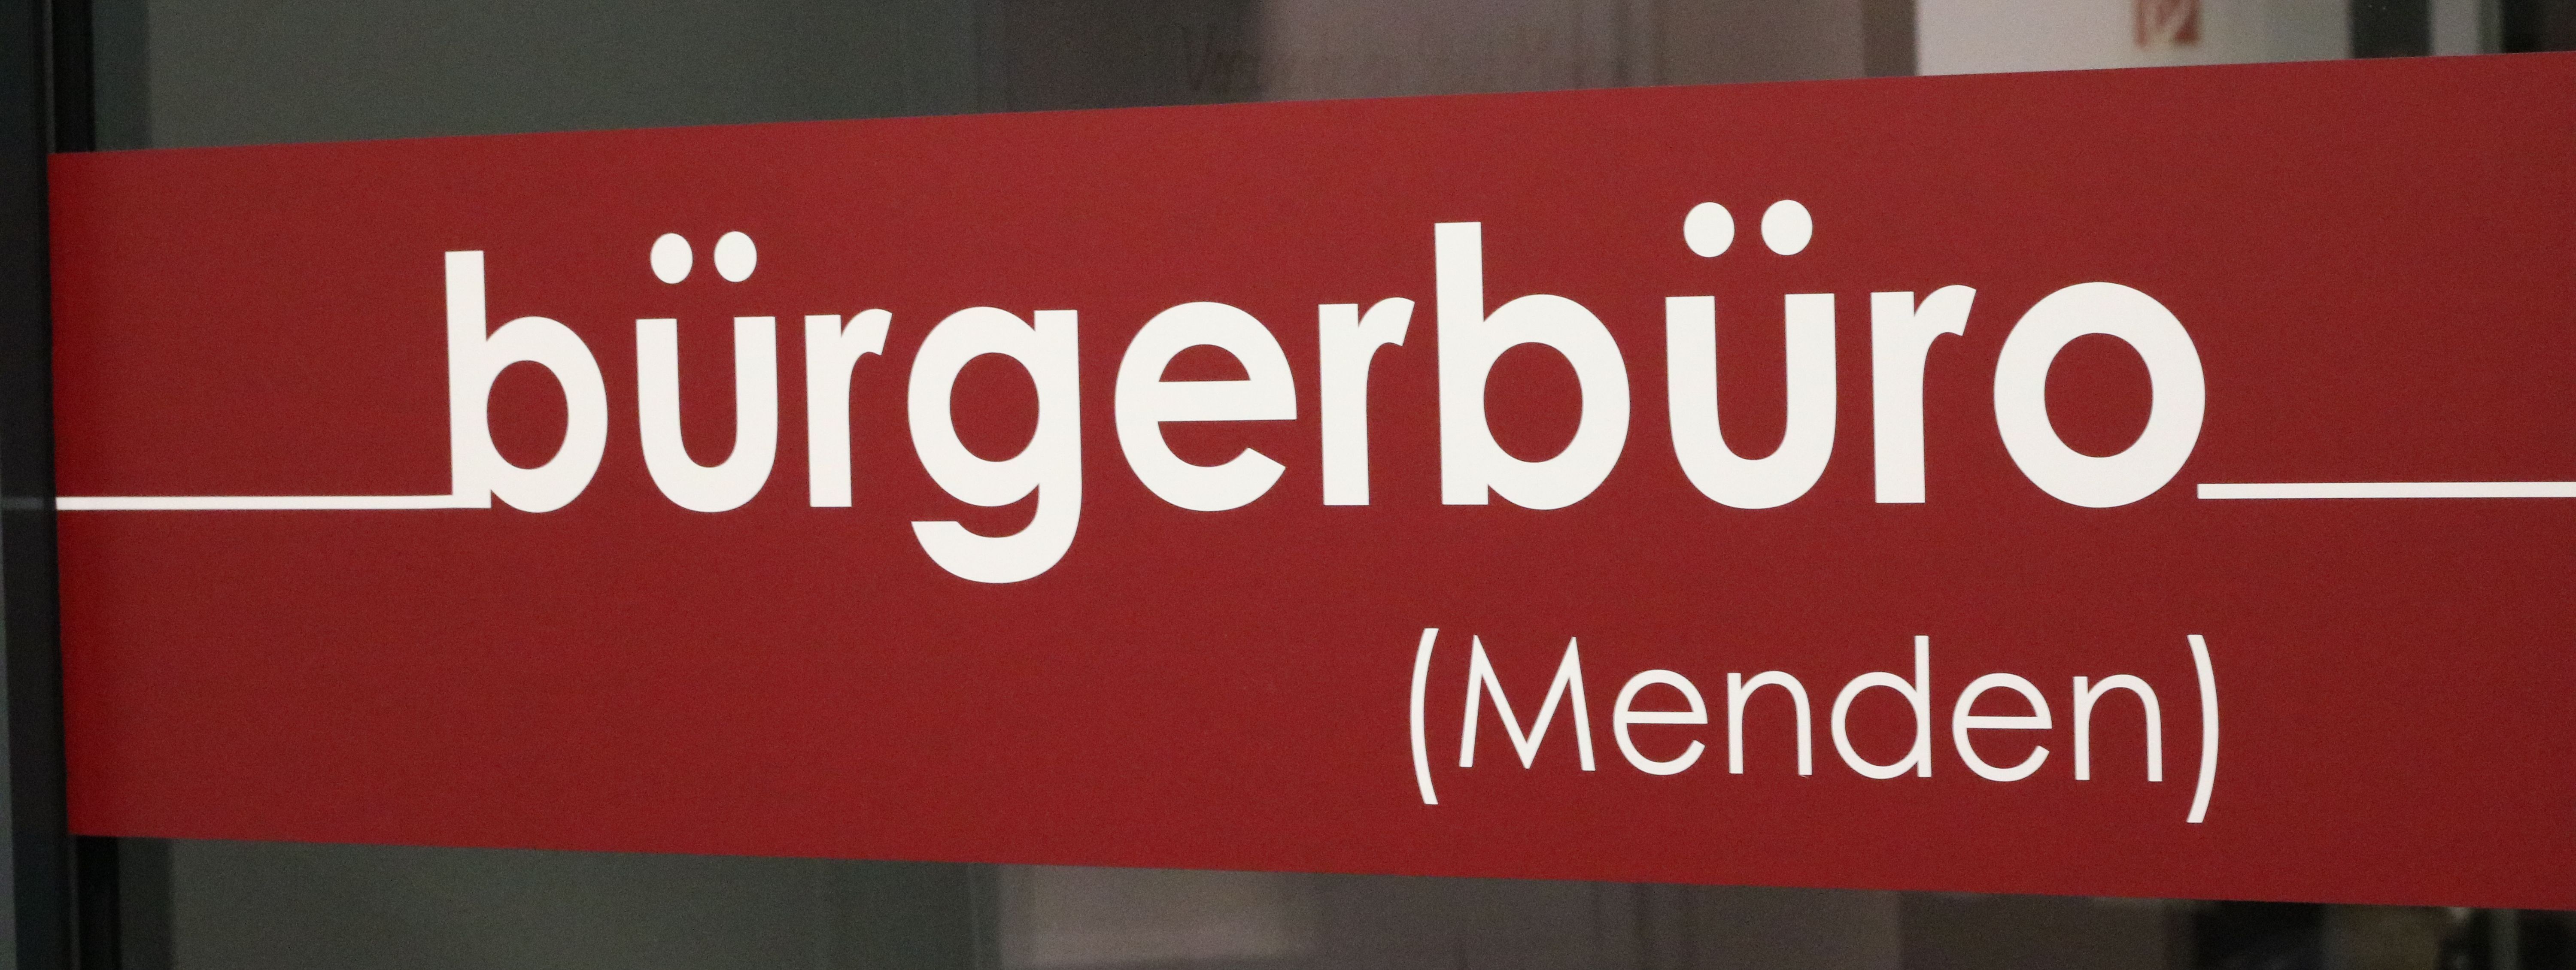 Der rote Aufkleber an der Eingangstür zum Bürgerbüro, auf dem in weißen Buchstaben das Wort "Bürgerbüro" zu lesen ist.